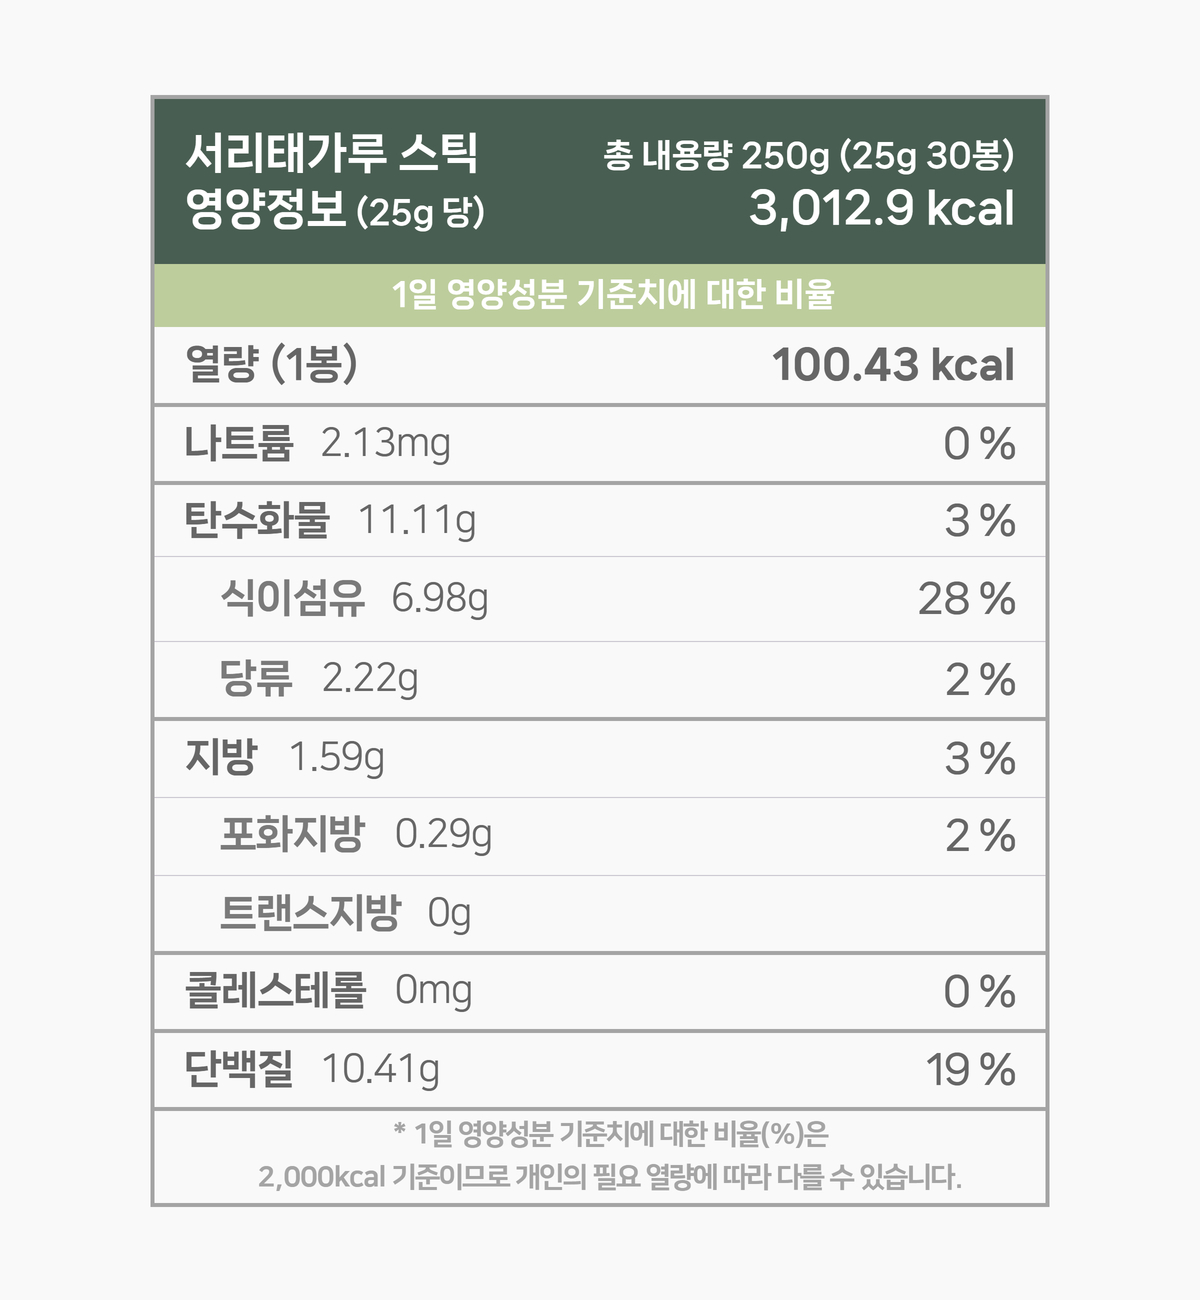 영양성분 표입니다. 한 봉지 25g 기준 100.43 칼로리. 다음은 칼로리를 제외한 다른 영양성분 입니다. 칼로리 외 영양성분은 1일 영양성분 기준치에 대한 비율도 퍼센트로 표기되어 있습니다. 그 목록입니다. 나트륨 2.14mg 0%, 탄수화물 11.16g 4%, 당류 2.22g 2%, 지방 1.59g 3%, 트랜스지방 없음, 포화지방 0.29g 2%, 콜레스테롤 0.00mg 0%, 단백질 10.41g 19%. 1일 영양성분 기준치에 대한 비율(퍼센트)는 2000칼로리 기준이므로 개인의 필요한 열량에 따라 다를 수 있습니다. 